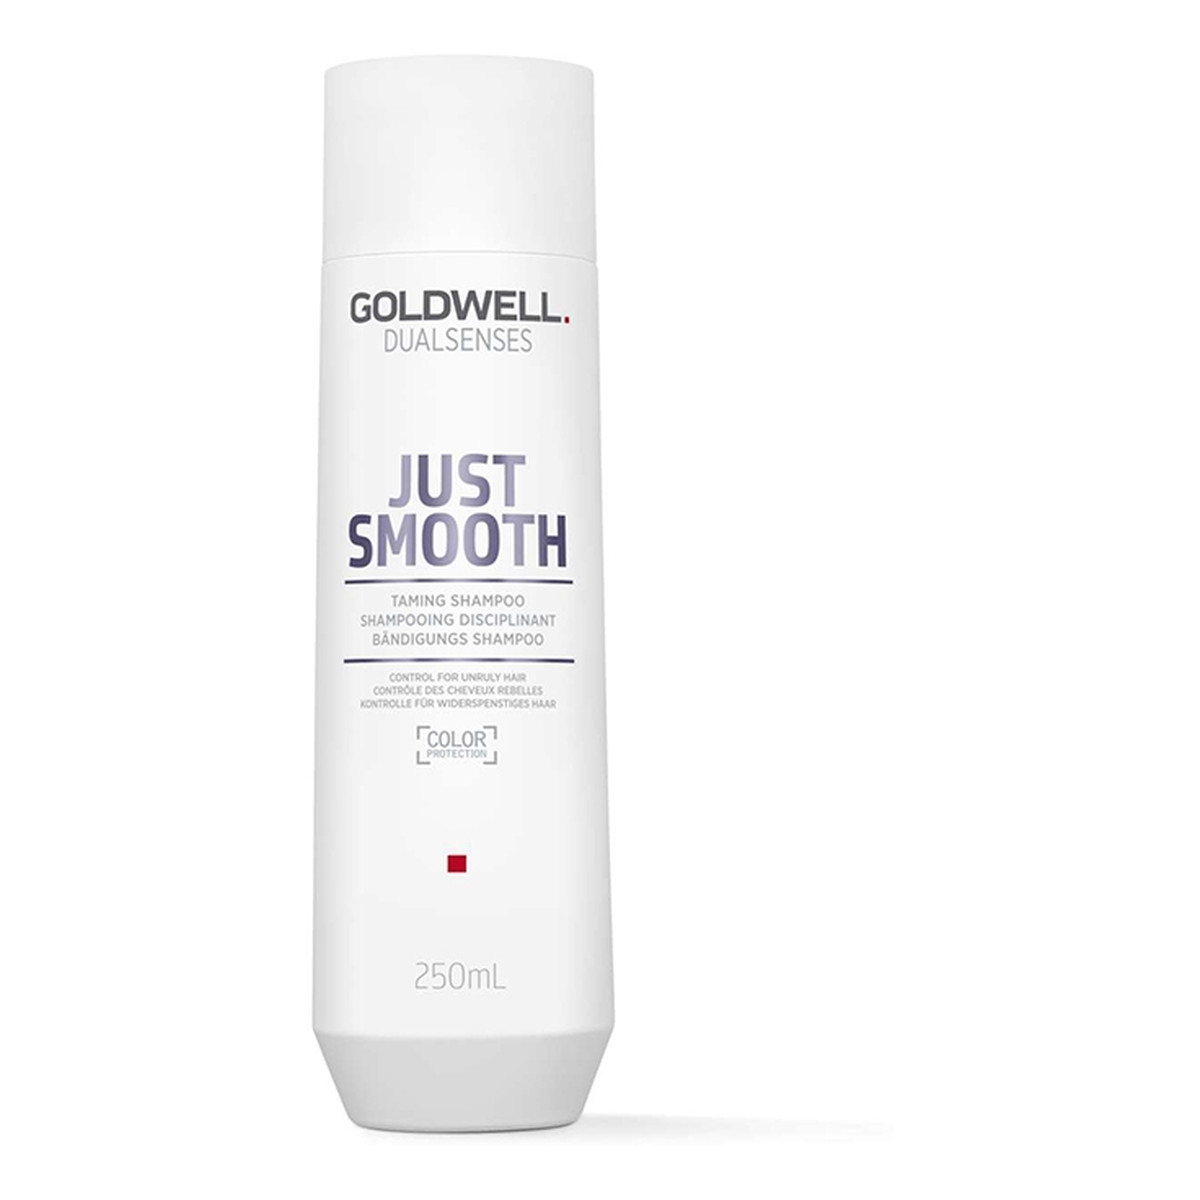 Goldwell Dualsenses Just Smooth Taming Shampoo Wygładzający szampon do włosów 250ml